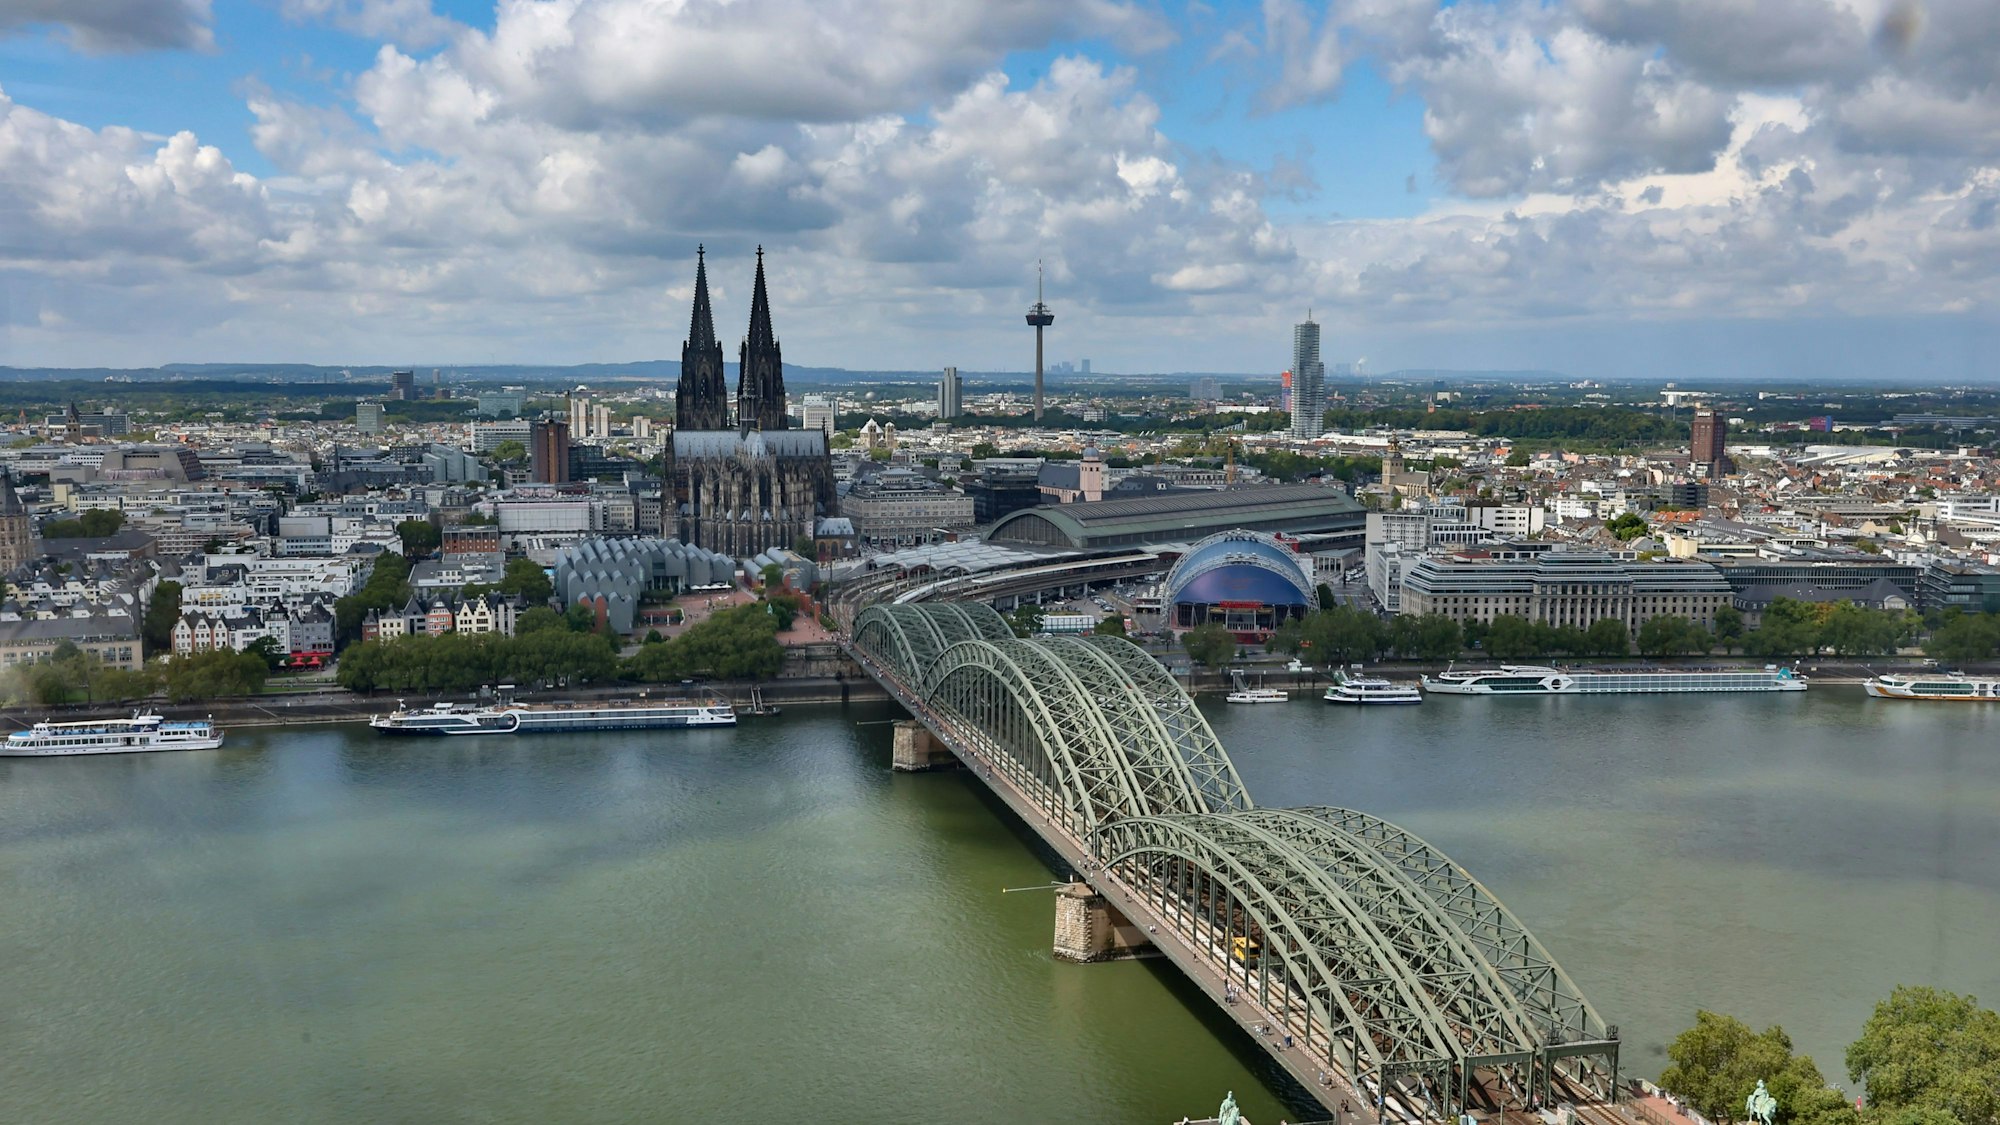 Der Blick auf die Hohenzollernbrücke und den Kölner Dom